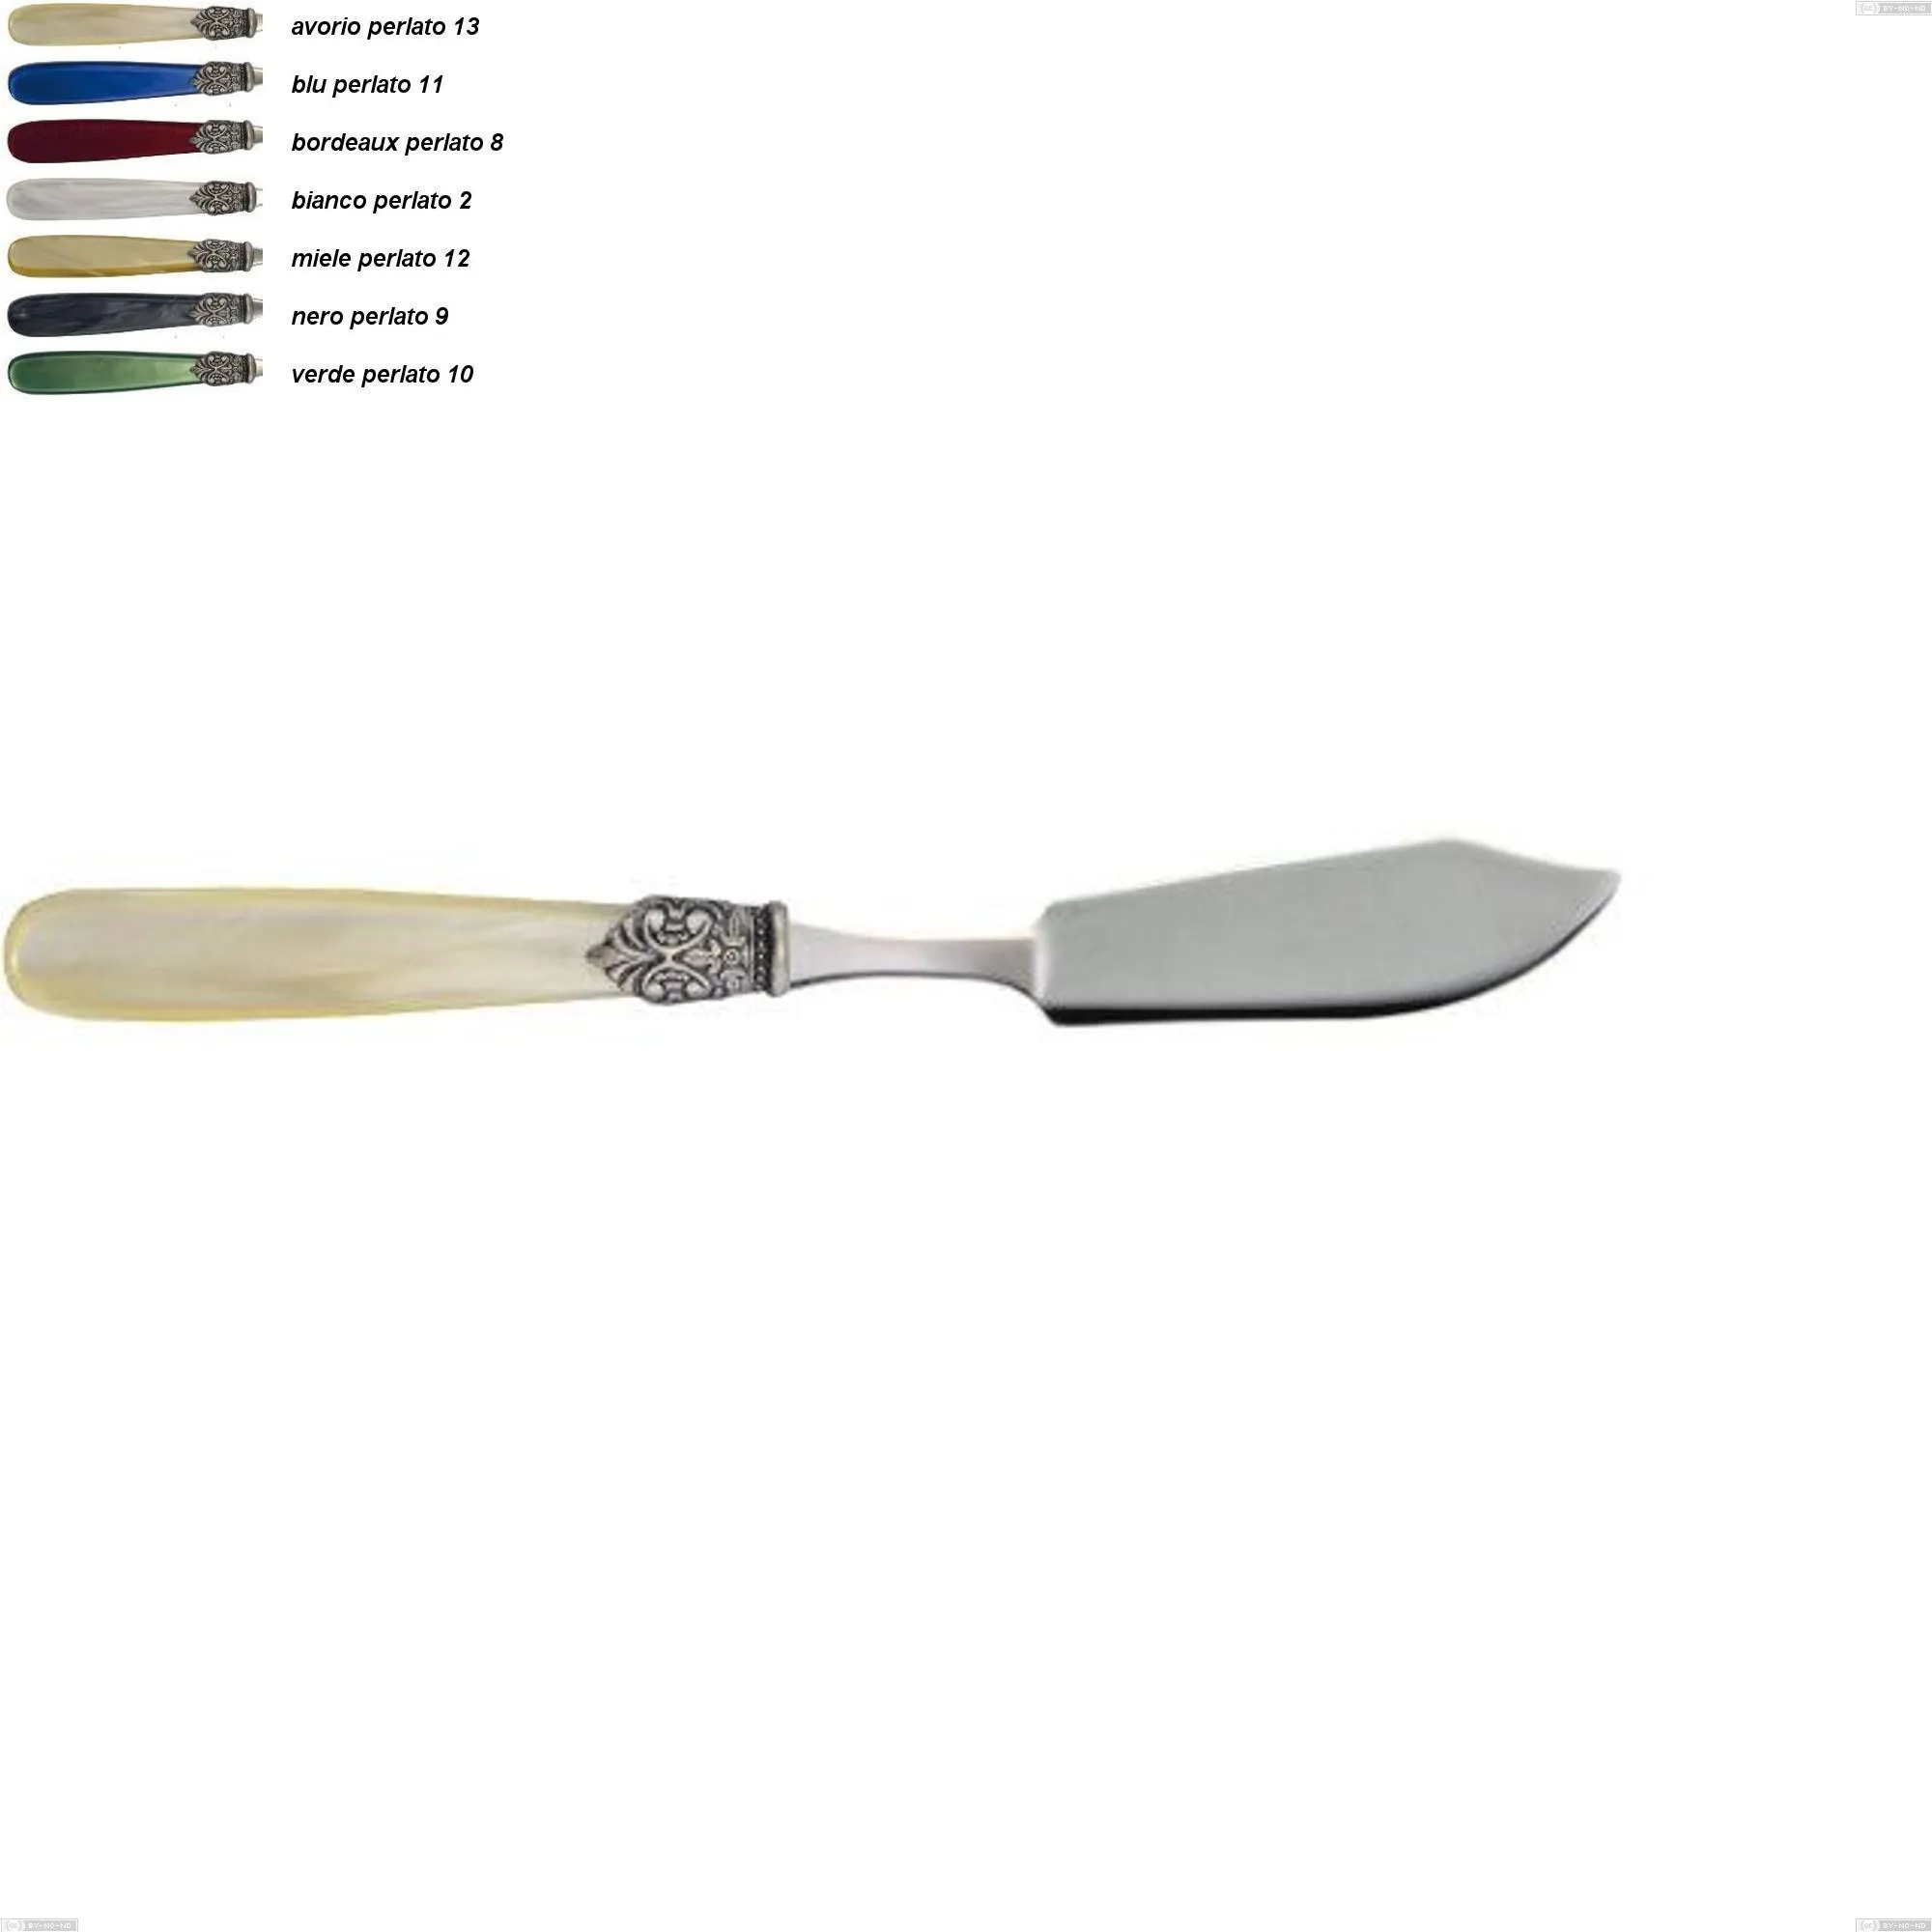 Coltello pesce georgian, Acciaio 18/10 AISI 304 Lucido manicatura acrilico perlato, lunghezza 219 mm